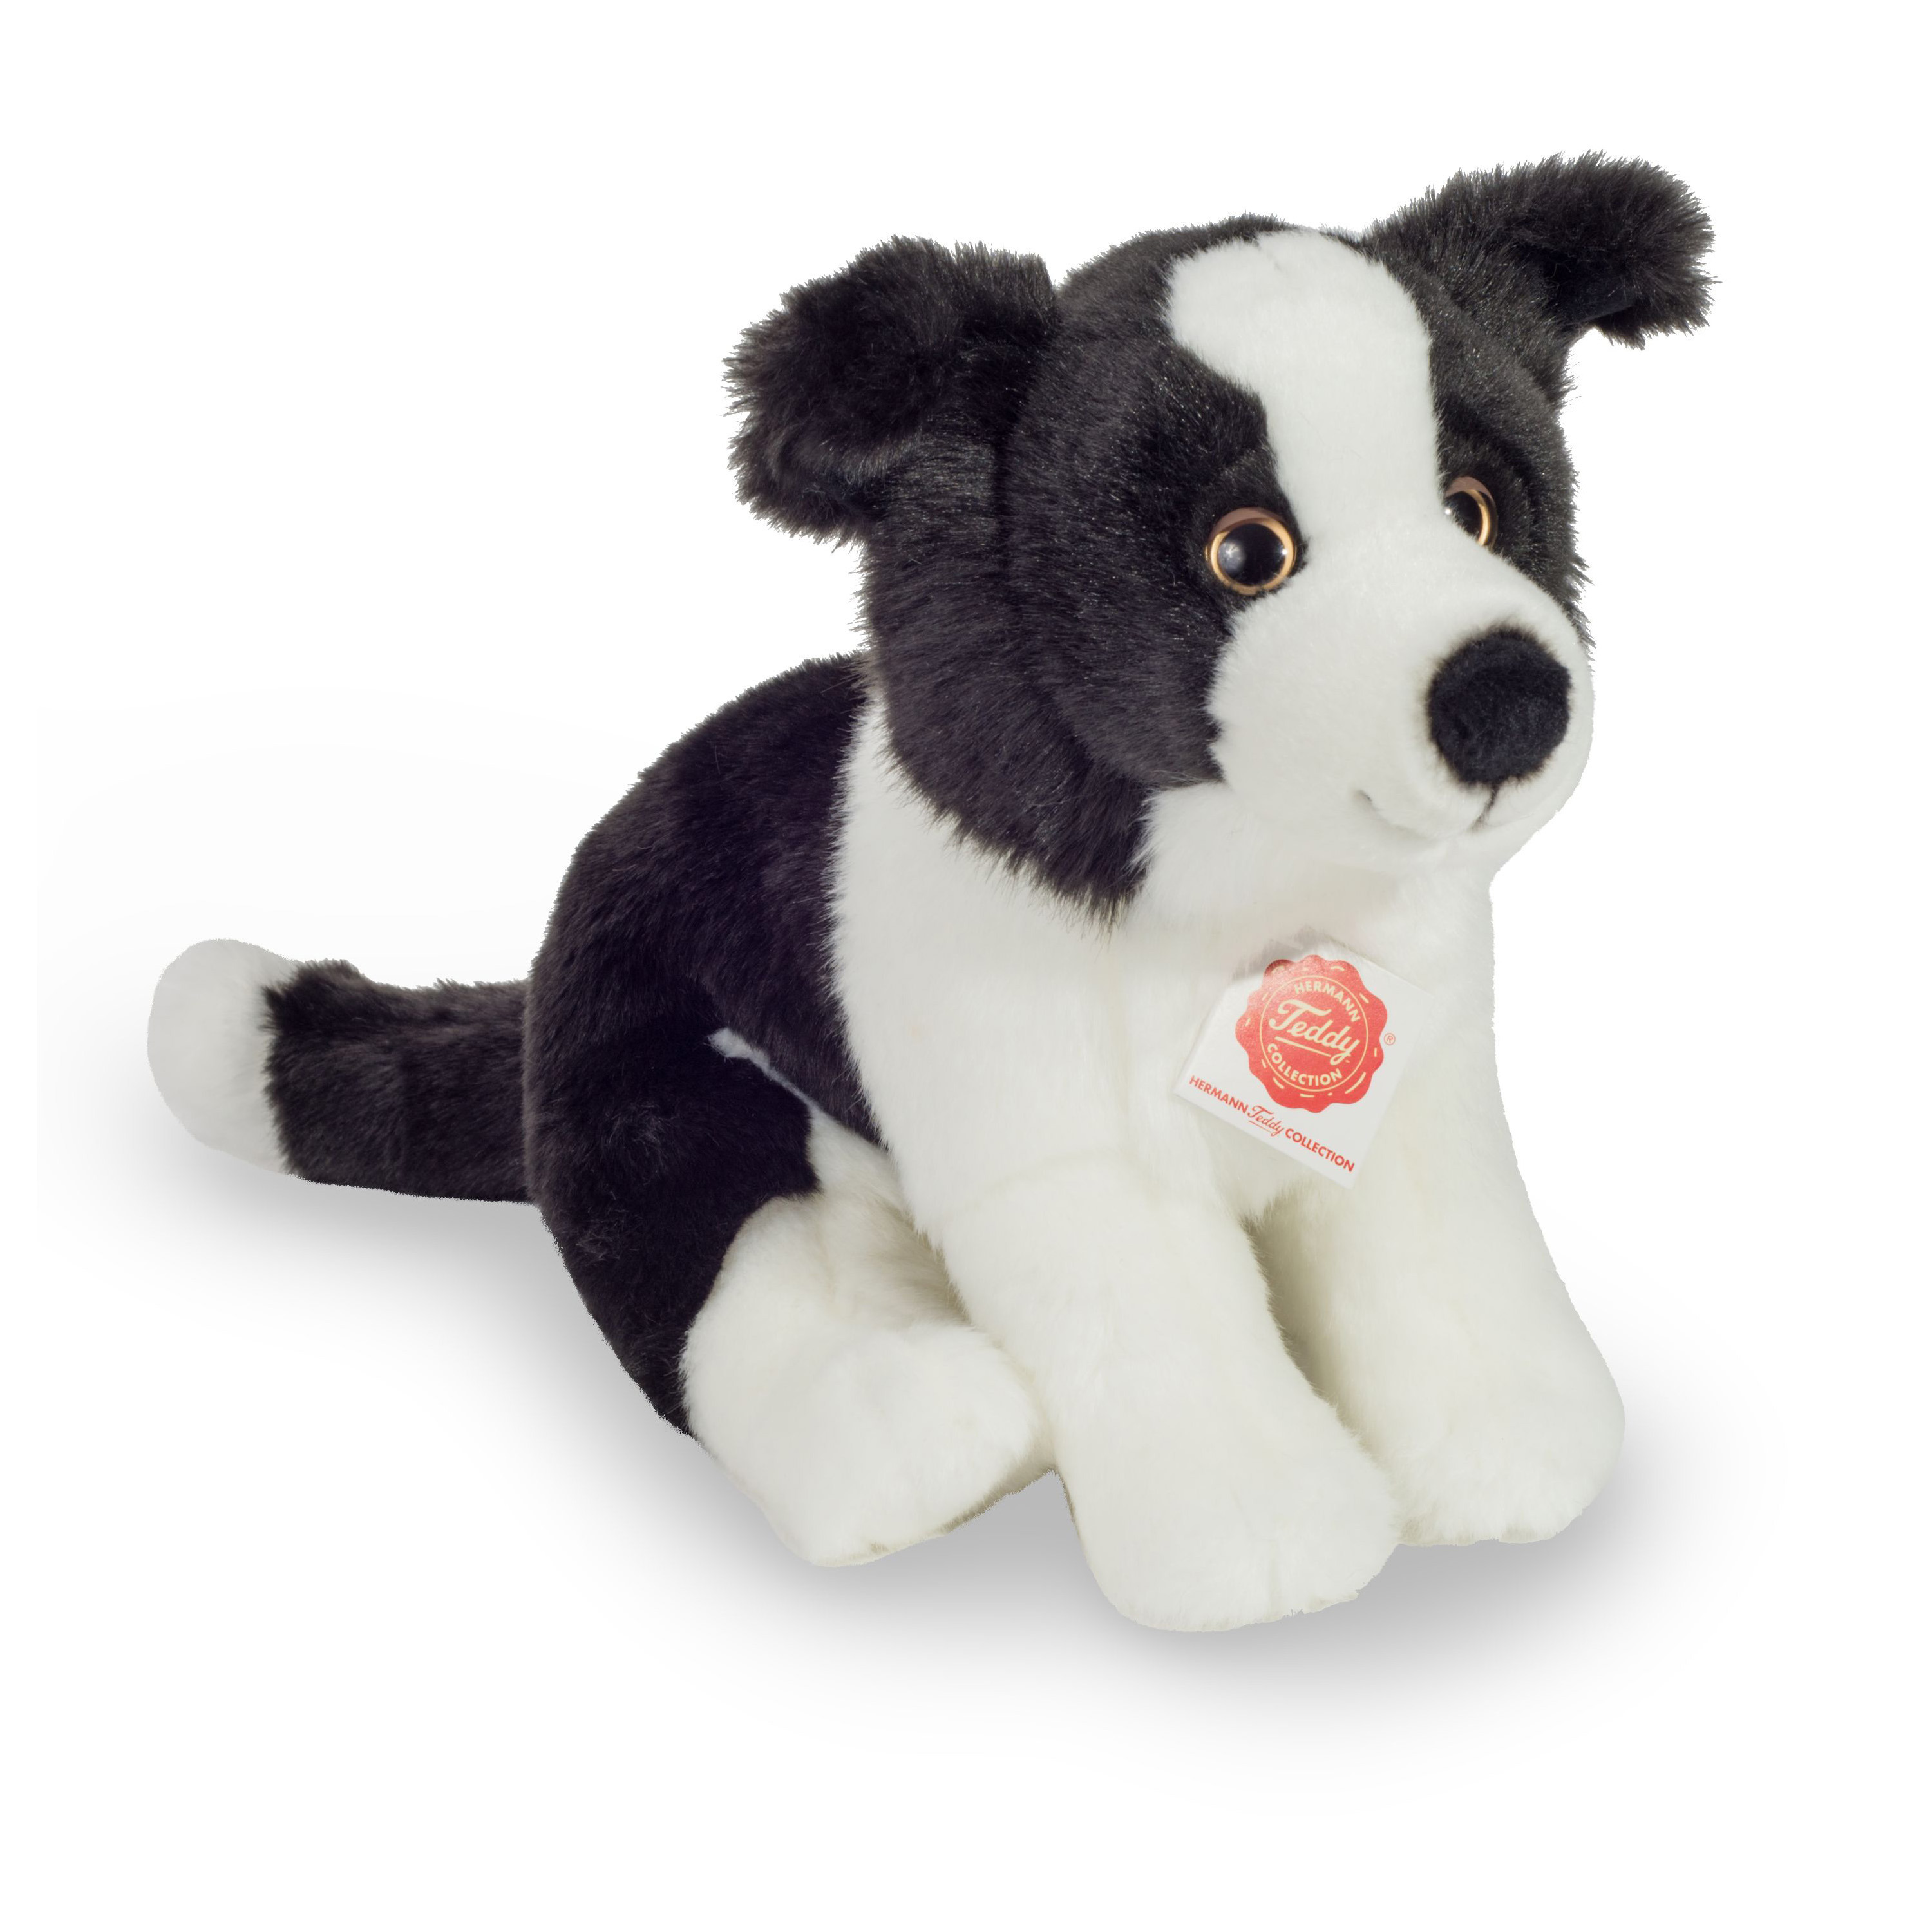 Hermann Teddy Knuffeldier hond Border Collie - zachte pluche stof - premium kwaliteit knuffels - zwart/wit - 25 cm